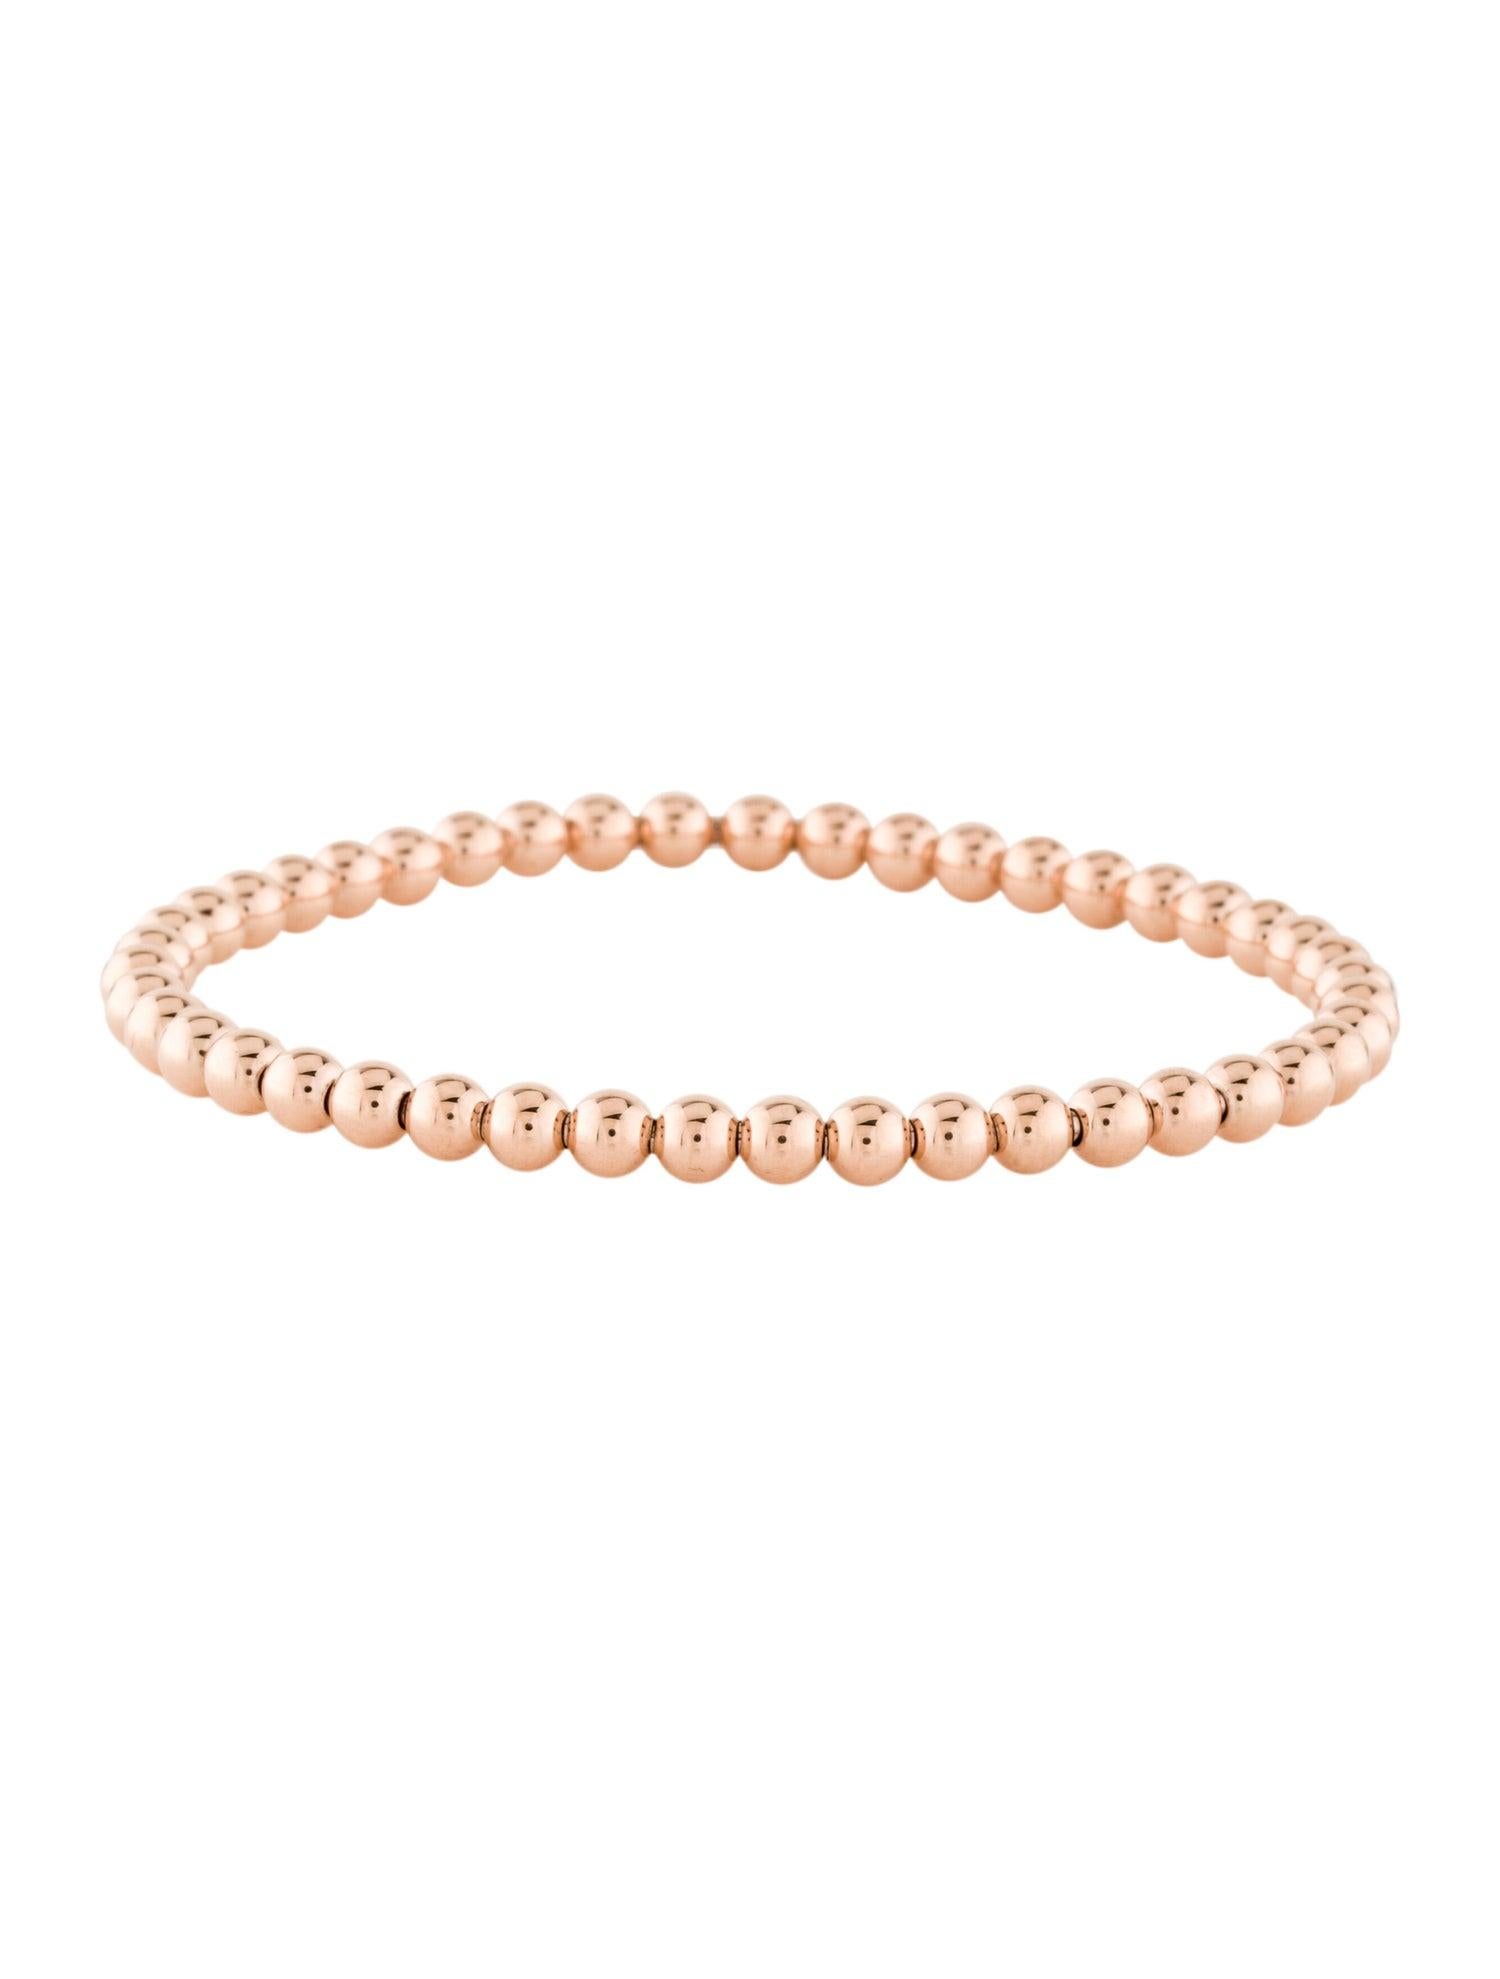 white gold beads bracelet